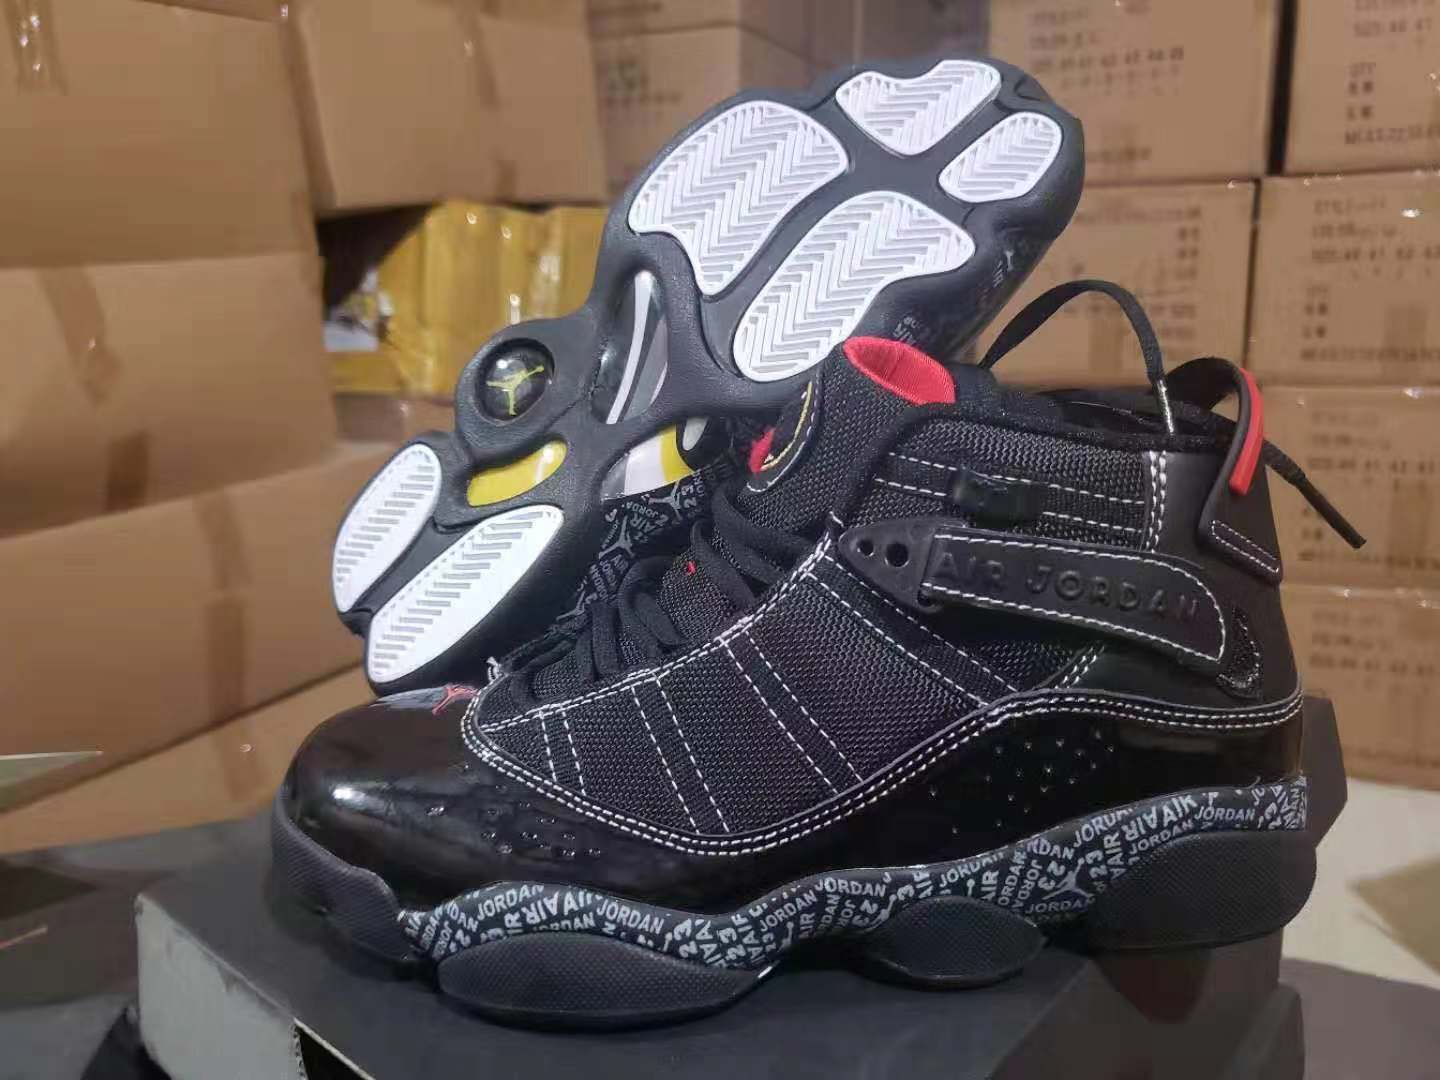 Air Jordan Six Rings of AJ11 Cool Black Shoes